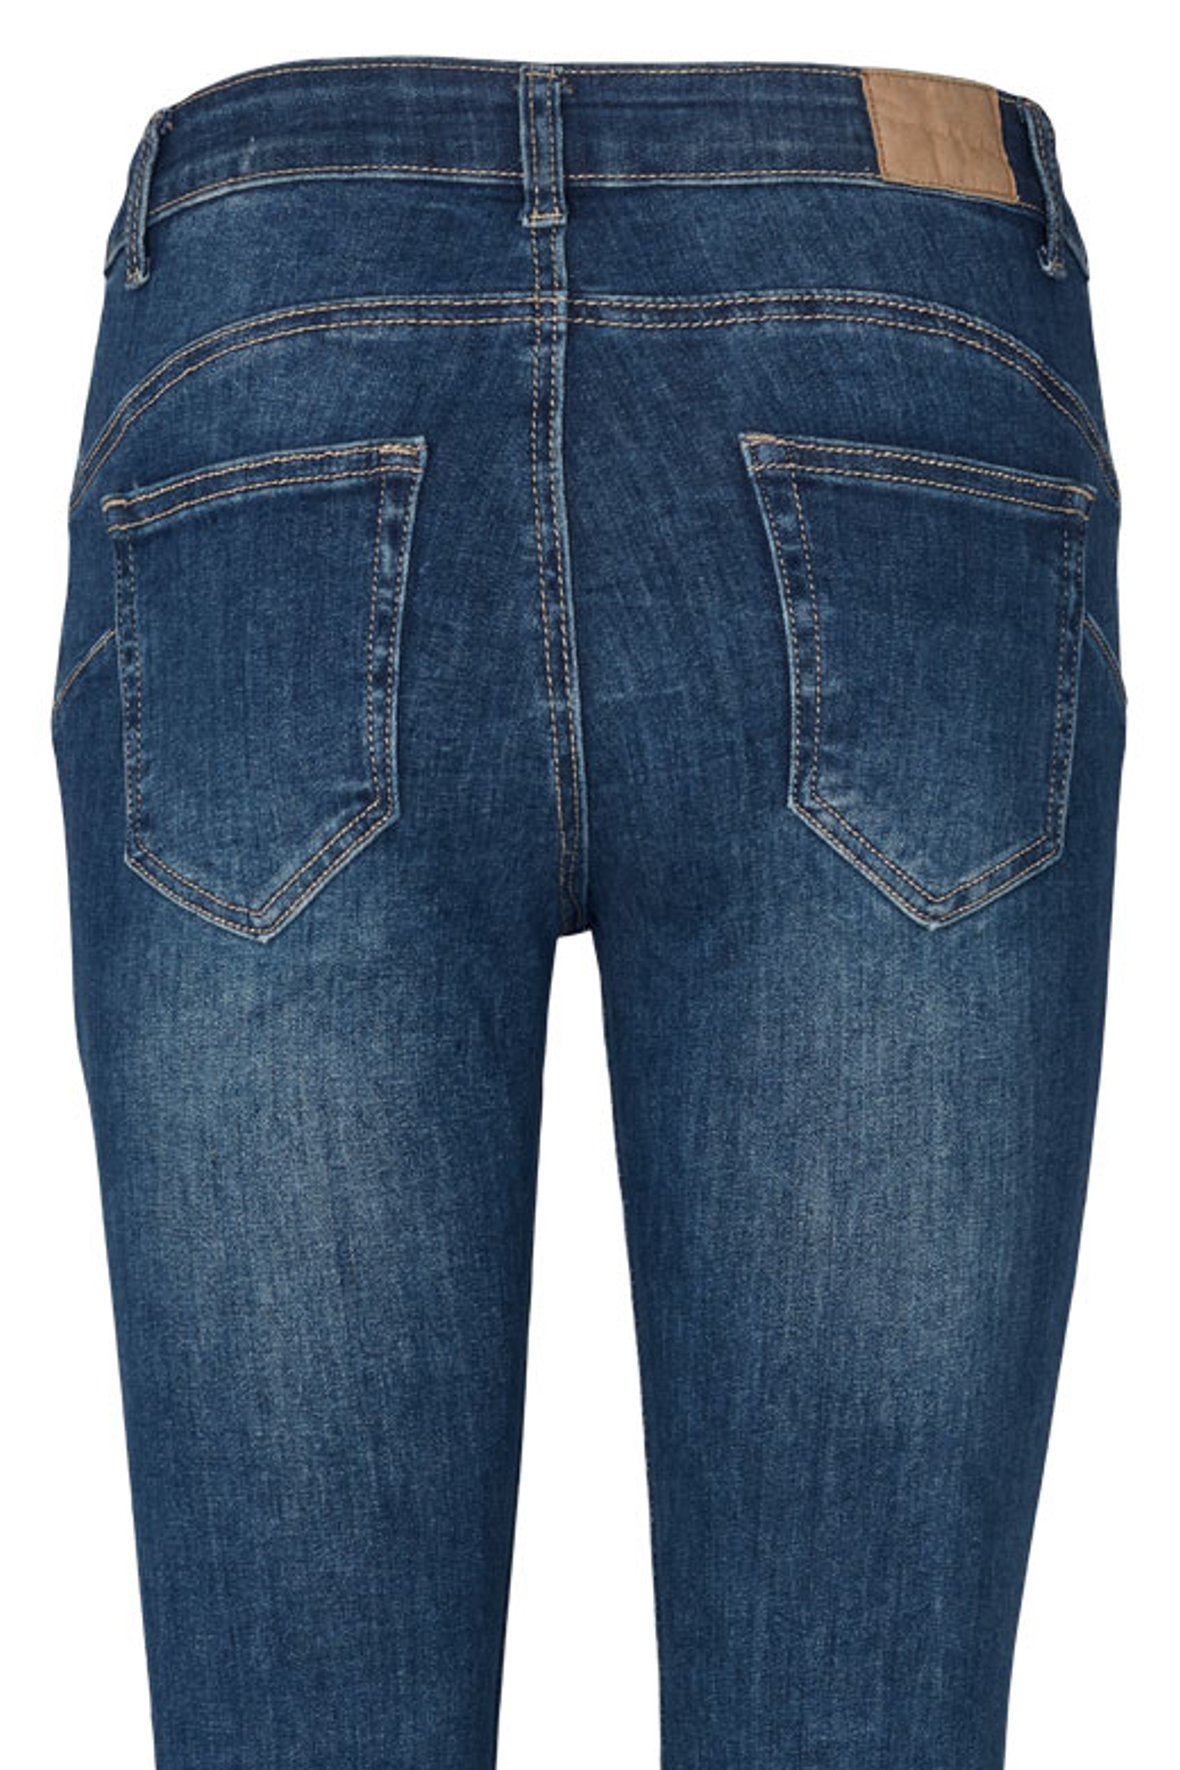 kode tæt Patent Prepair Lykke jeans med krøl og stræk i tight fit der sidder til - Hos Lohse